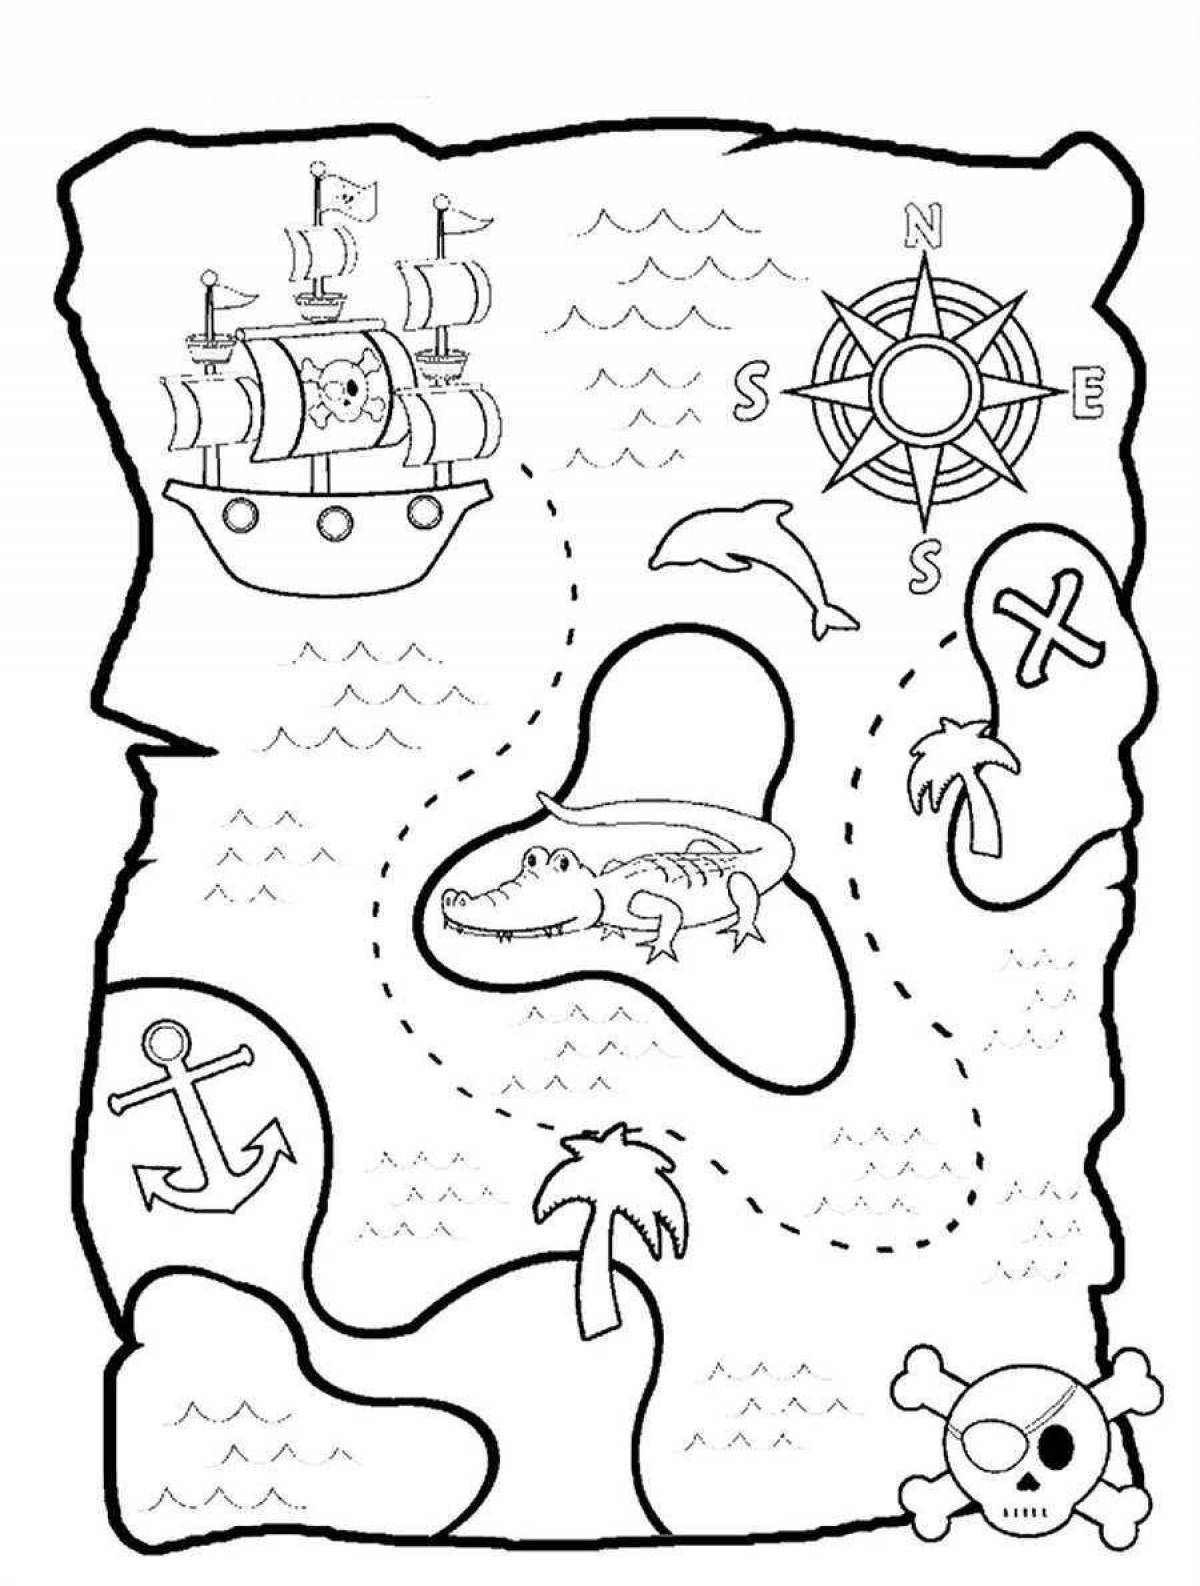 Раскраска великолепная пиратская карта